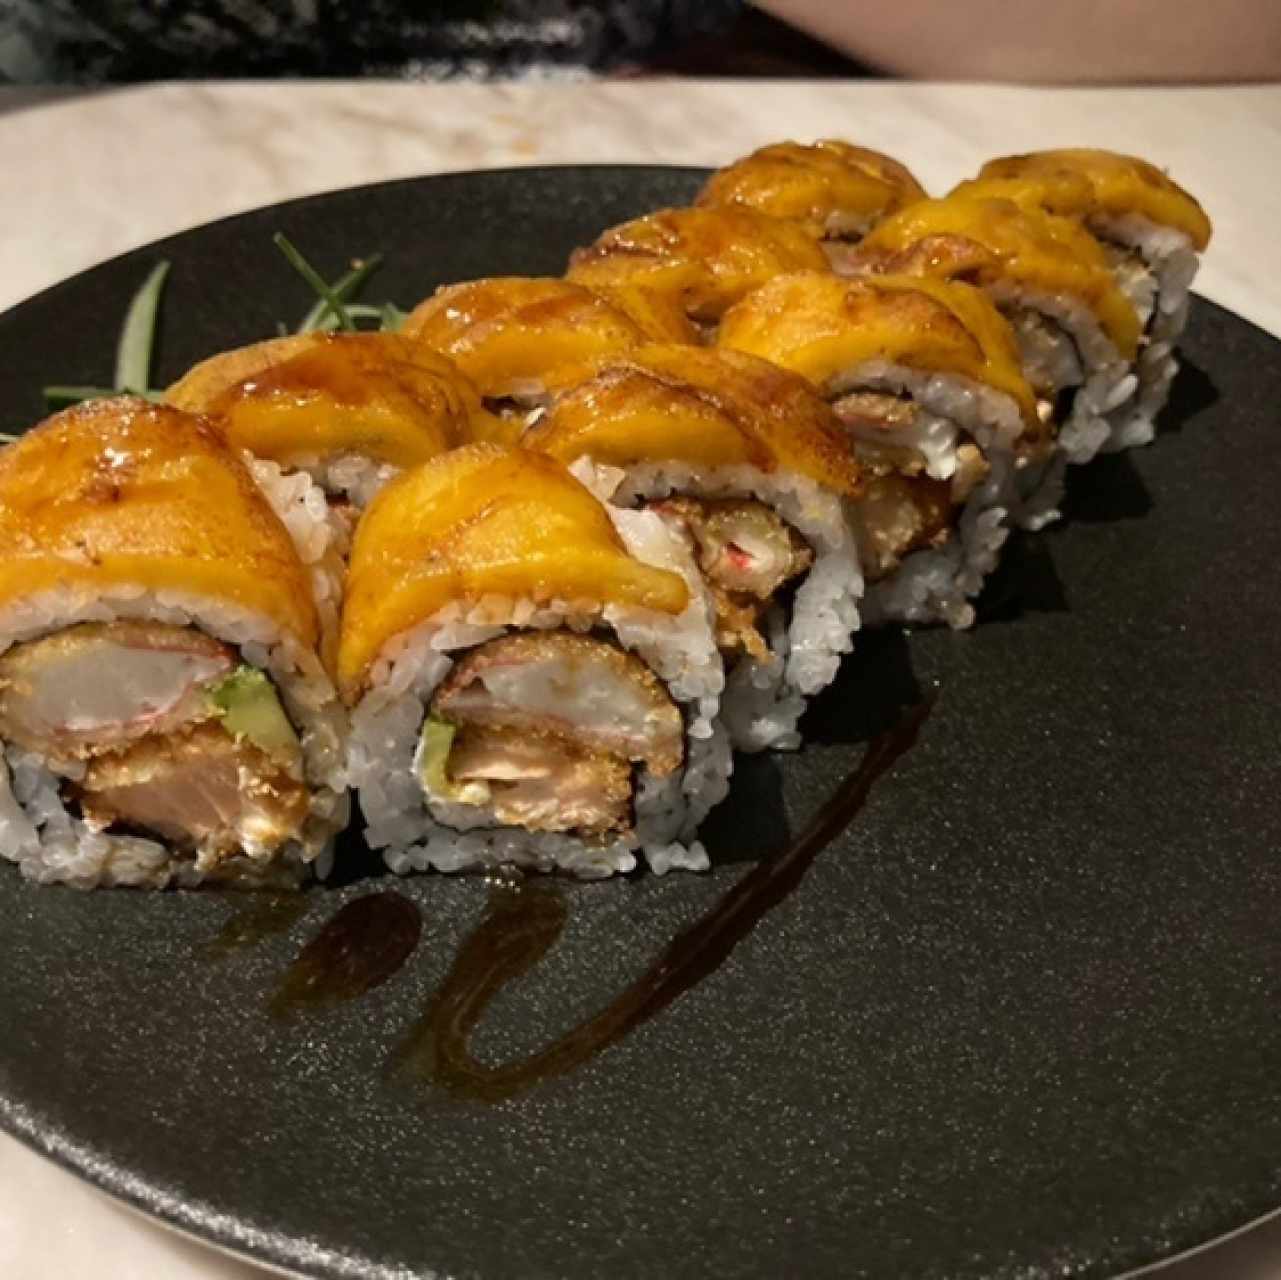 Roll con Platano camaron tempura y Salmon